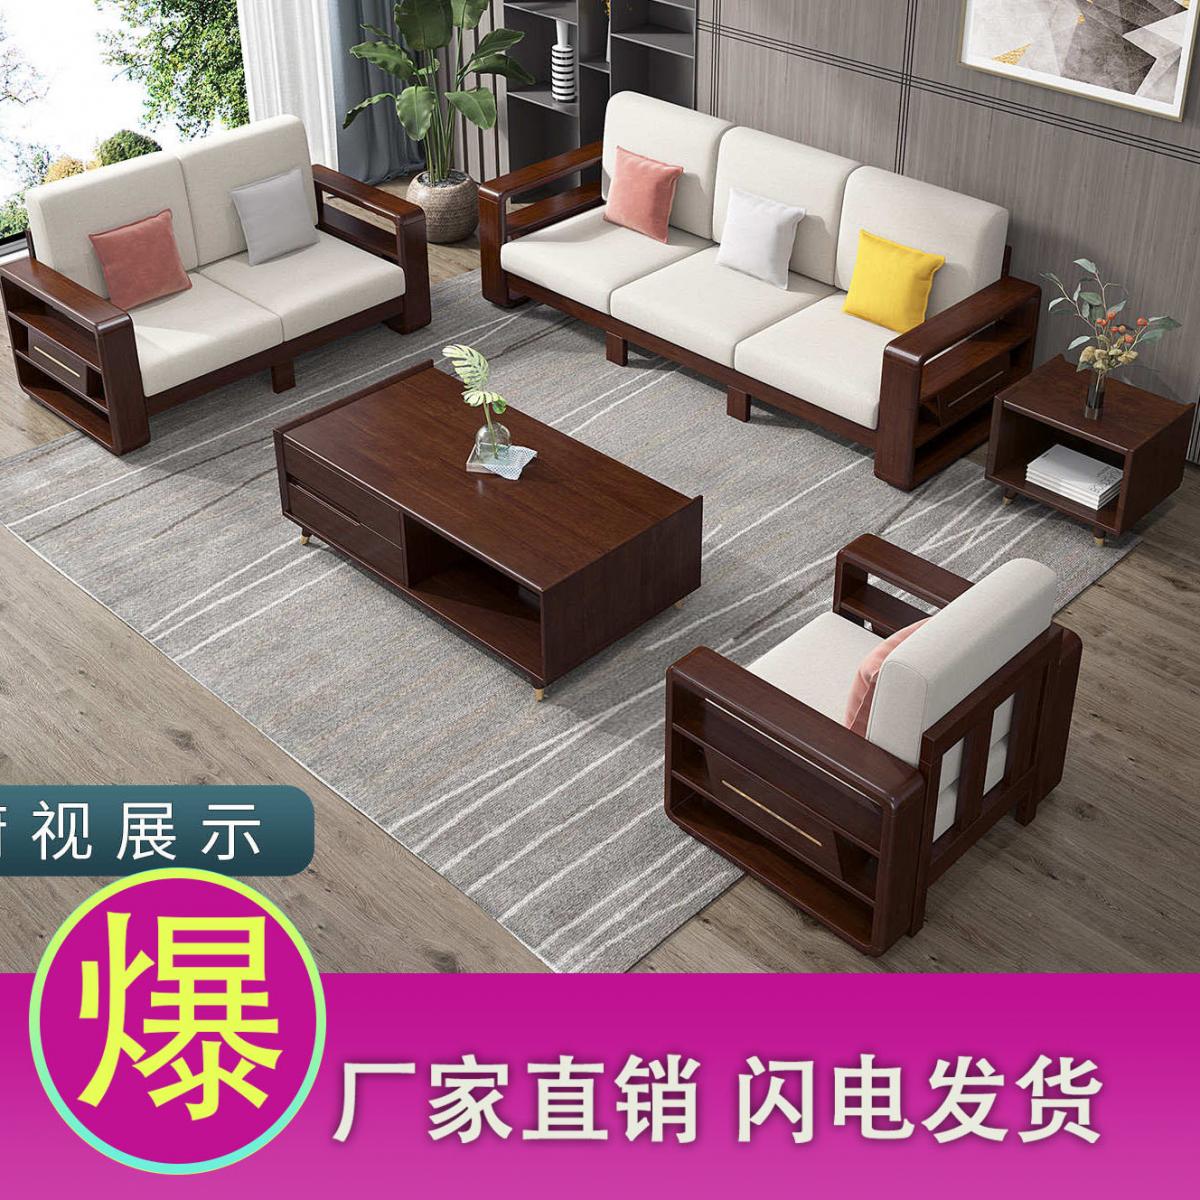 新中式实木沙发现代布艺沙发组合简约木质客厅北欧轻奢风家具套装